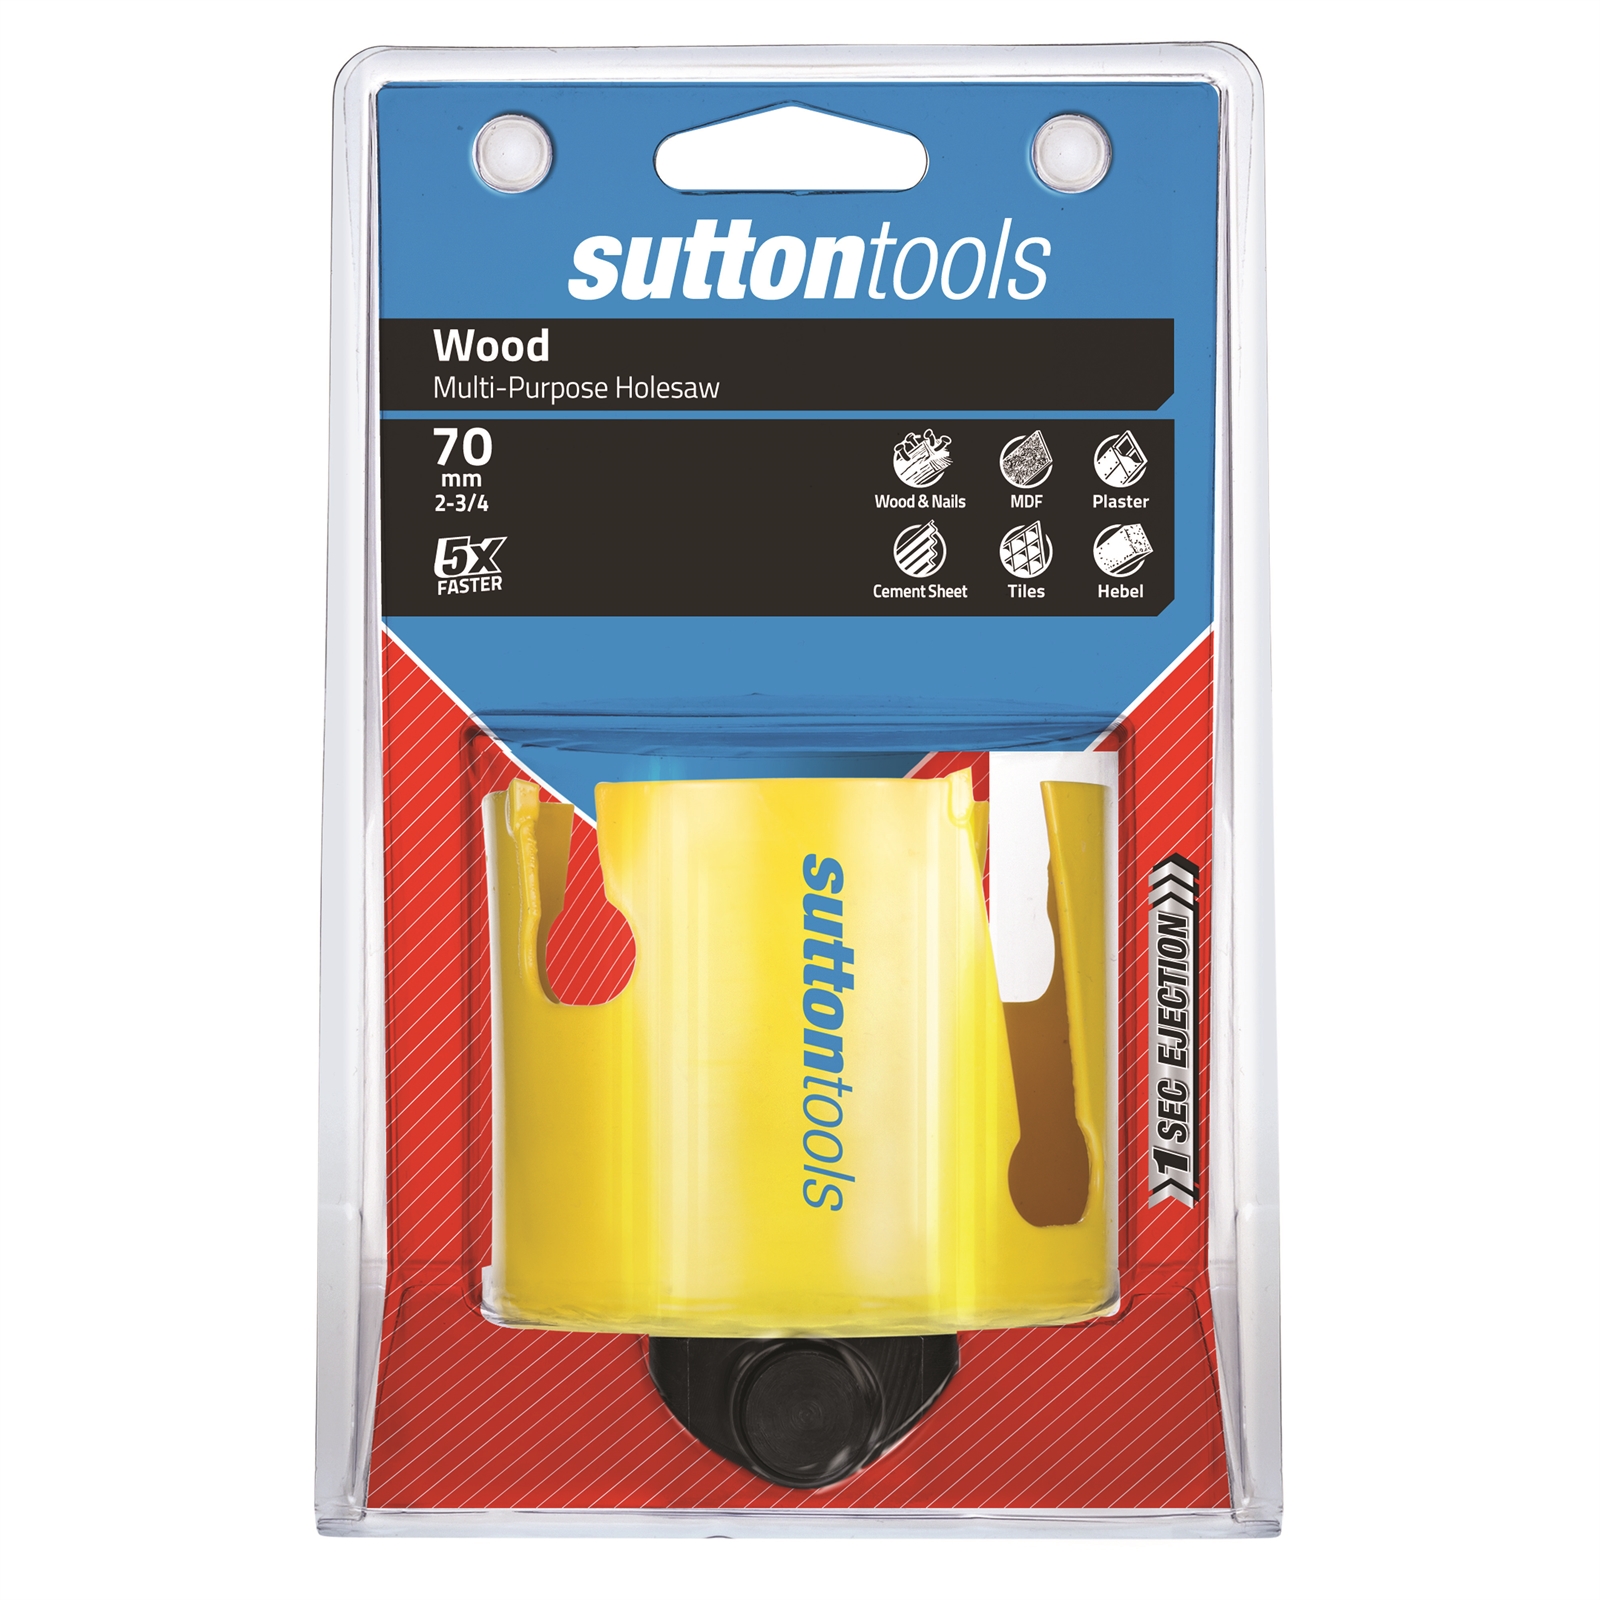 Sutton Tools 70mm Multipurpose Holesaw